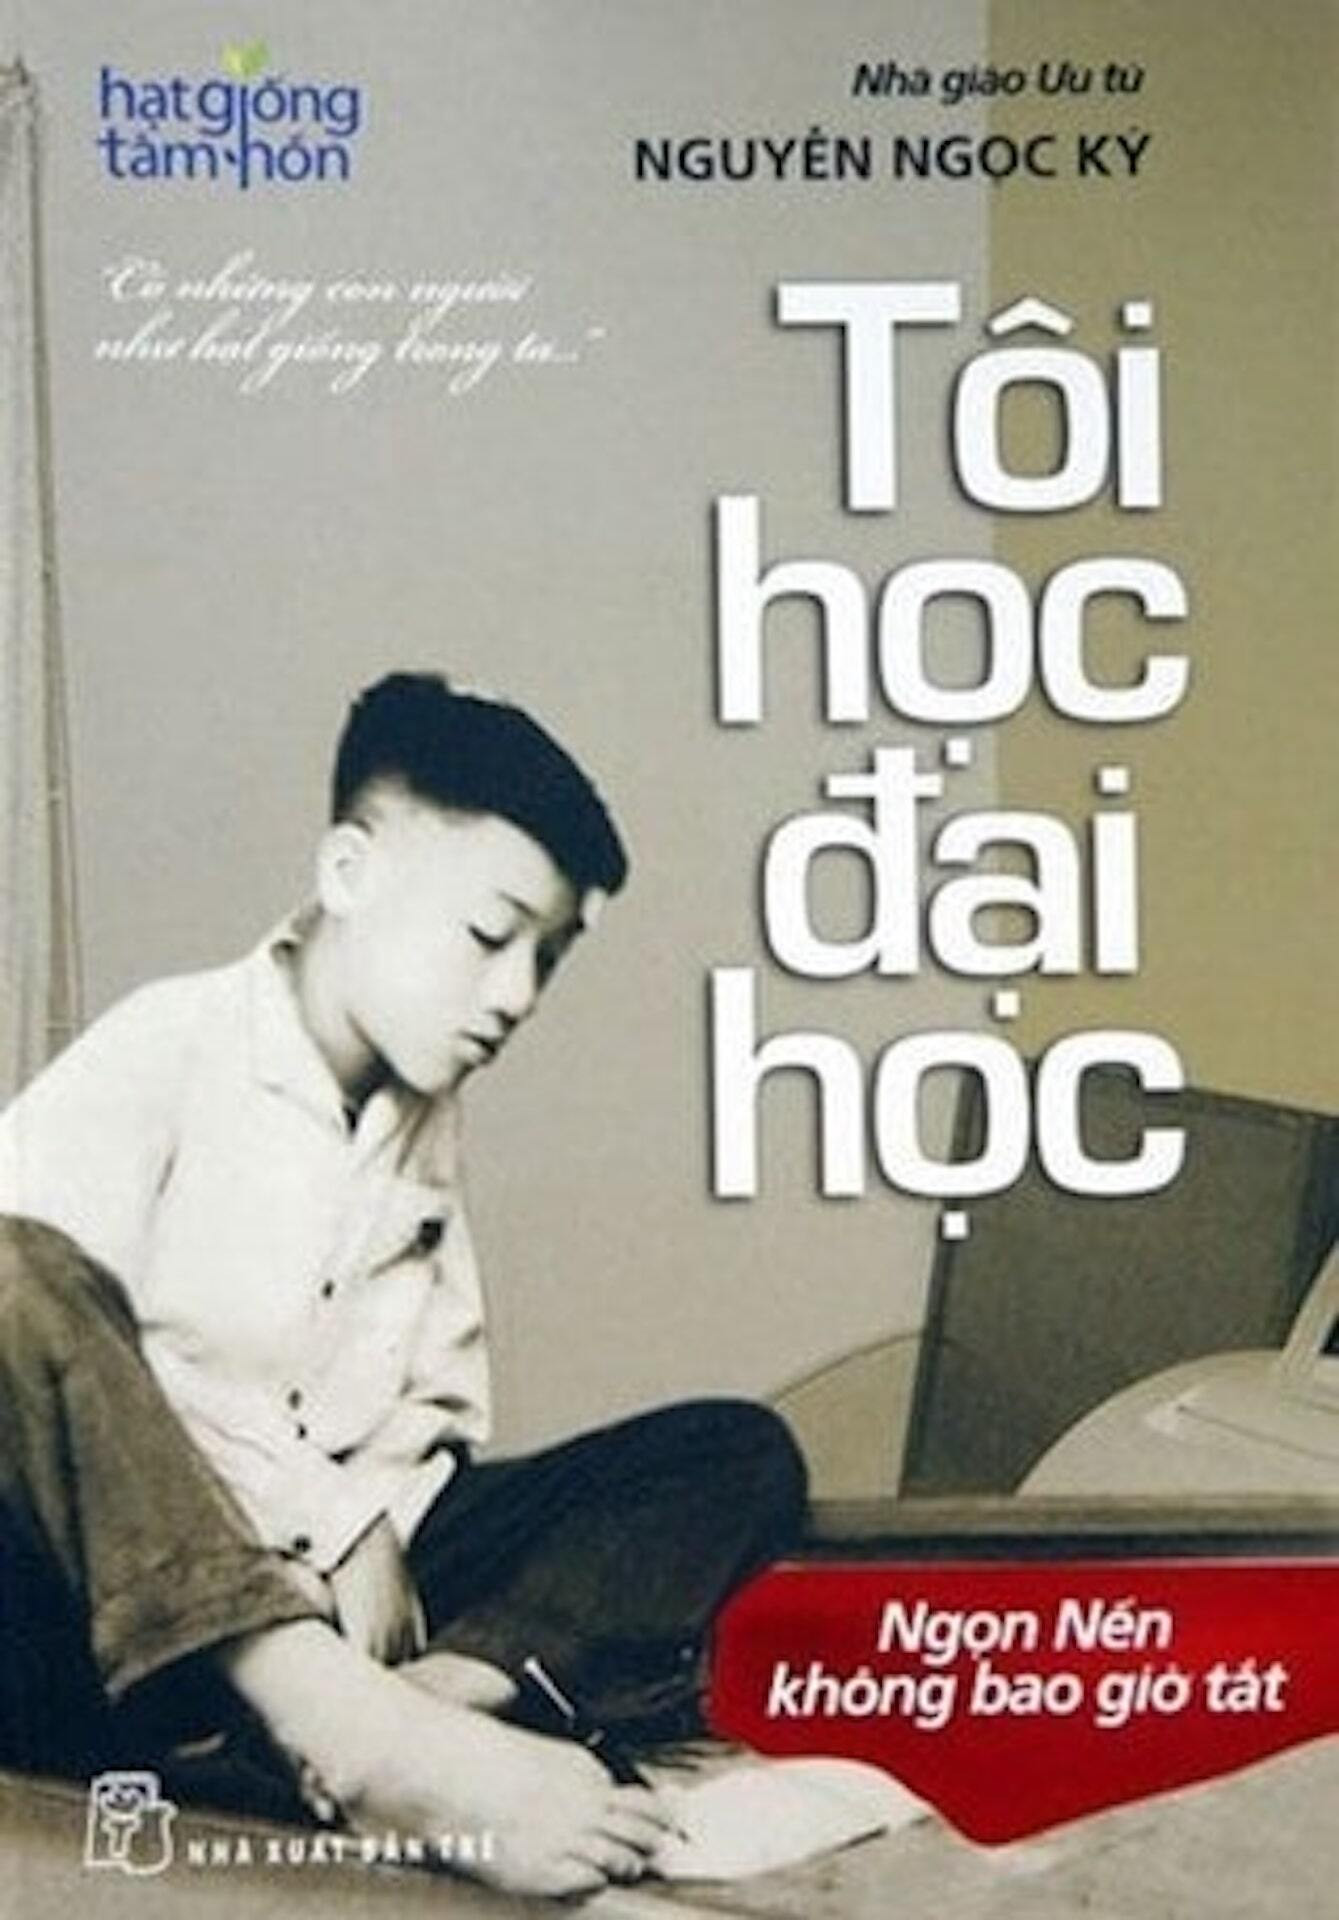 Những tác phẩm để đời của thầy giáo Nguyễn Ngọc Ký - 2